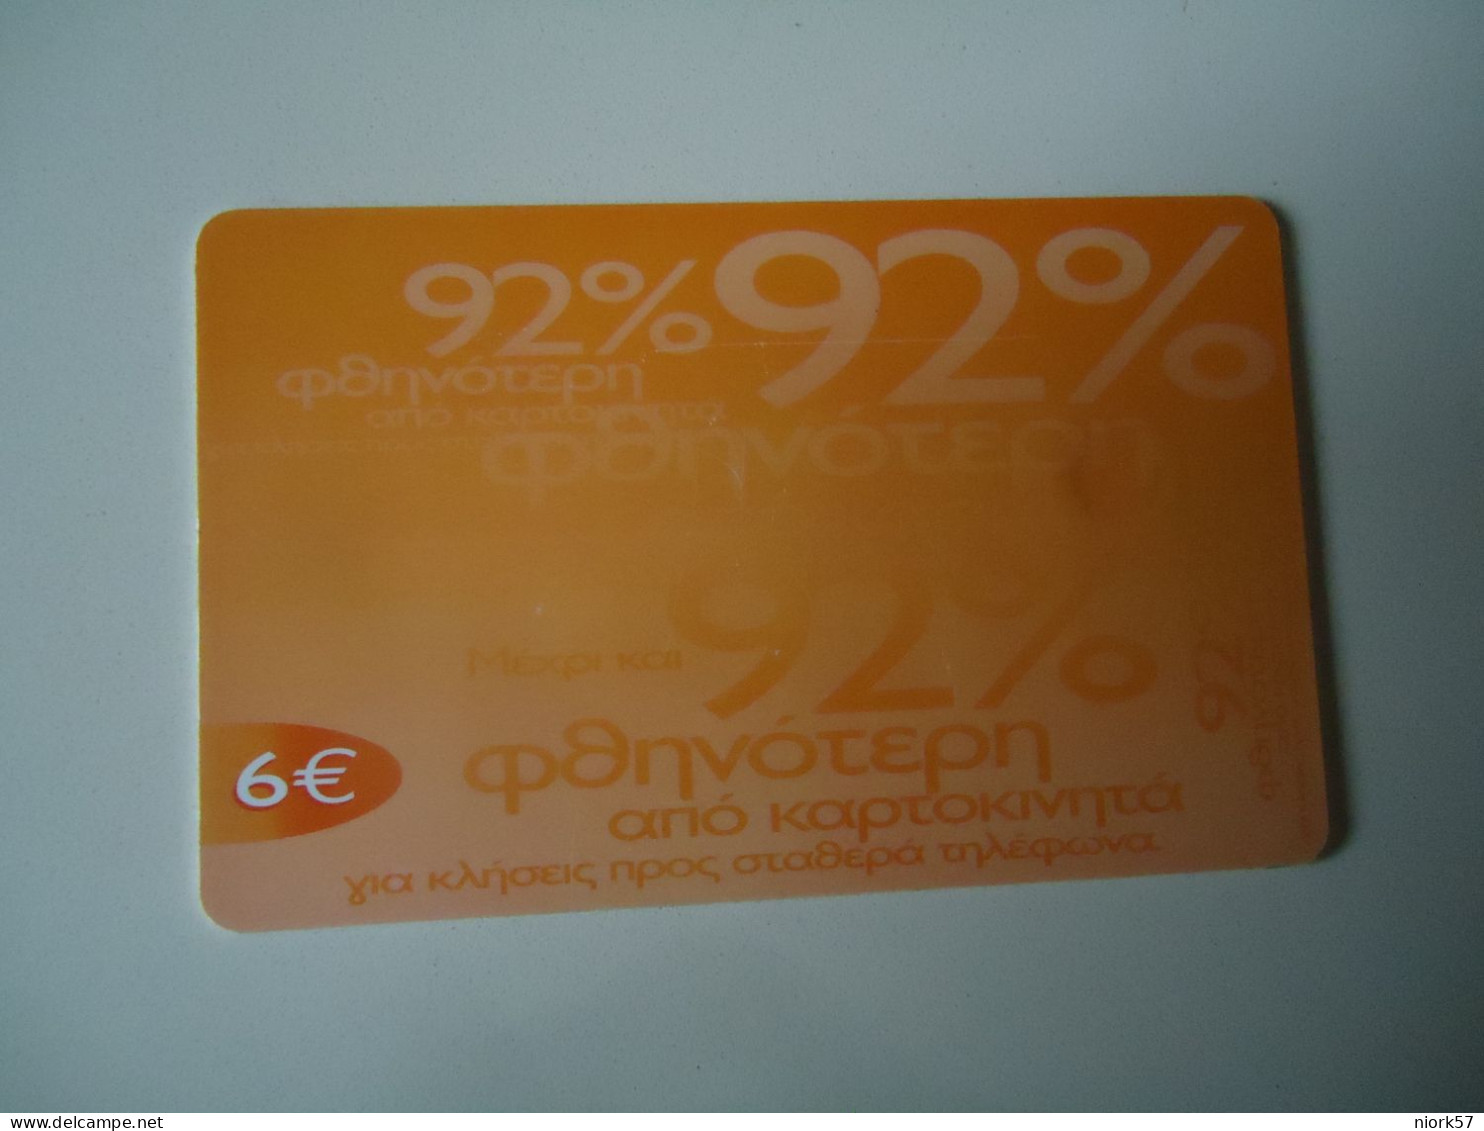 GREECE  USED CARDS  OTE 6  EYRO - Operadores De Telecom